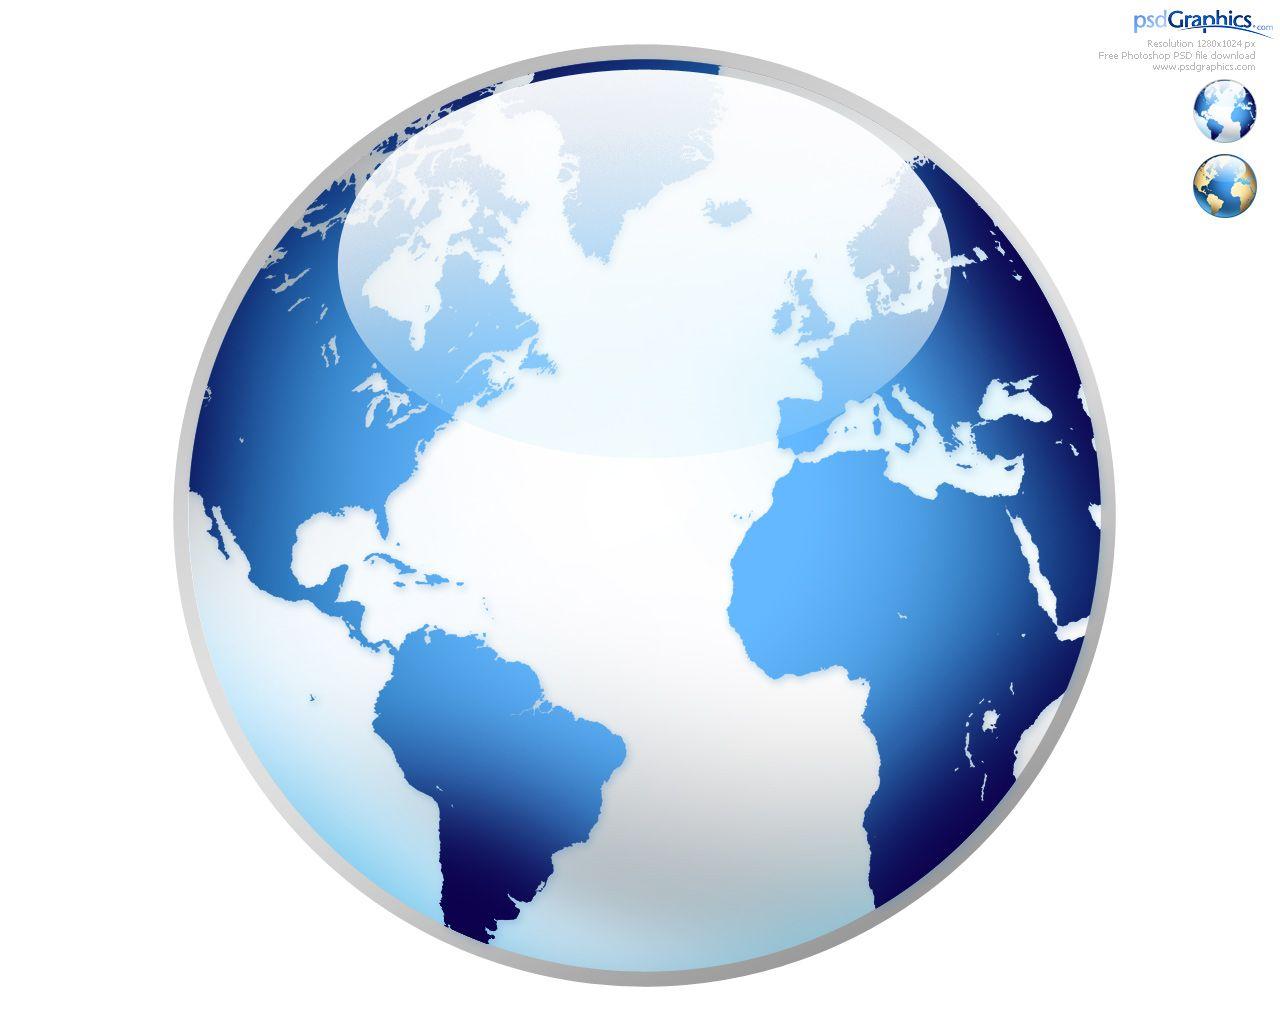 Shiny Globe Logo - Photoshop world globe icon | PSDGraphics